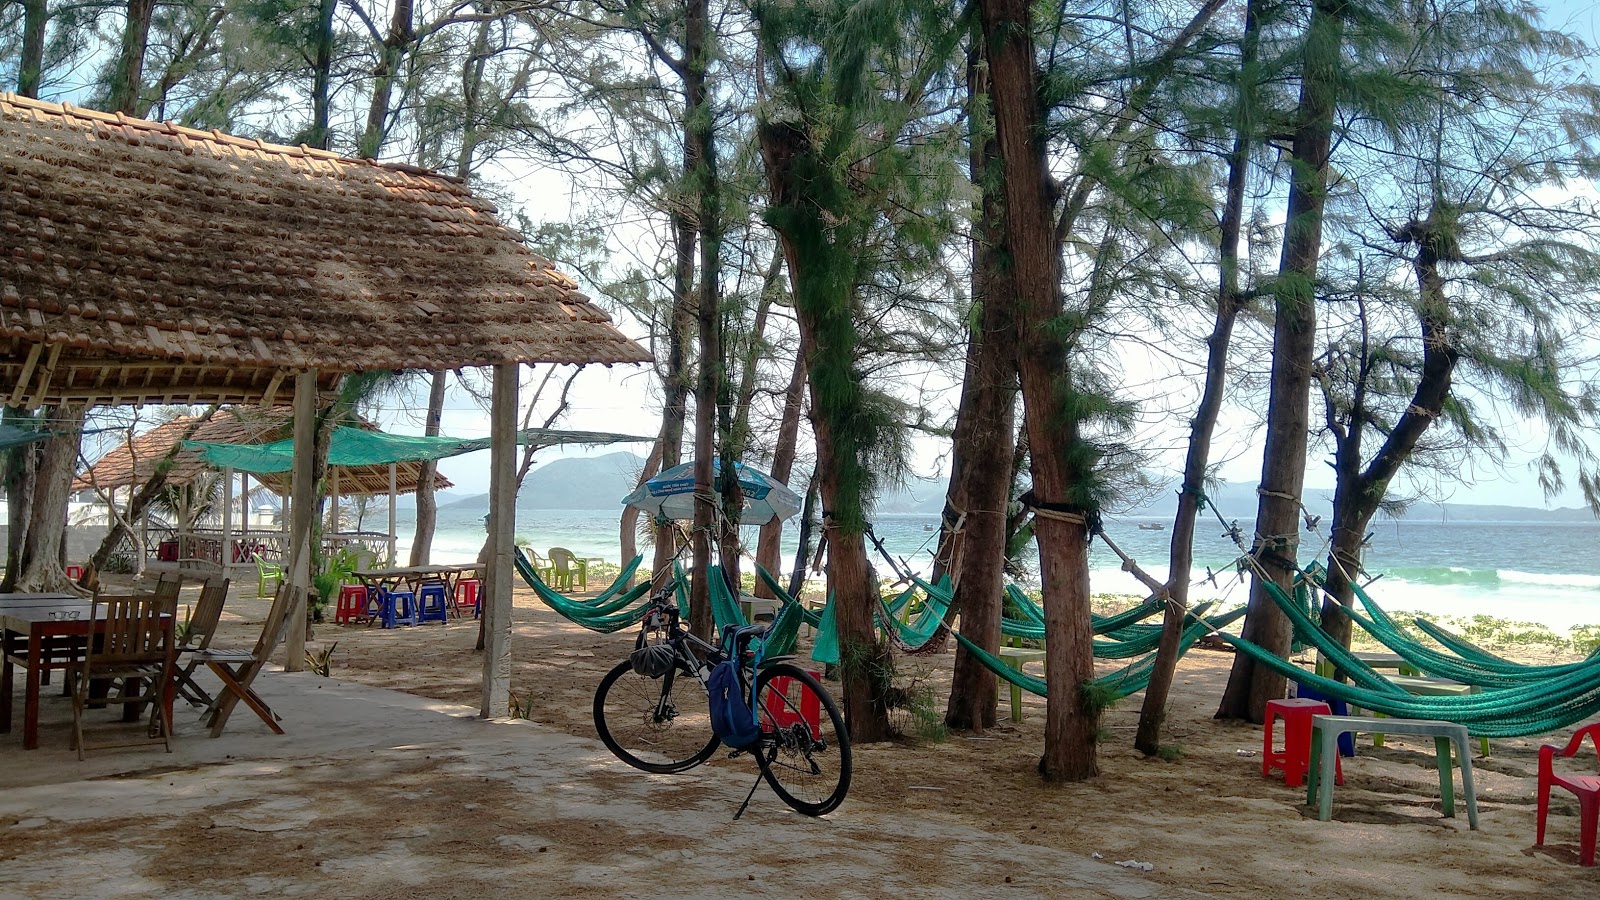 Fotografie cu Ganh Do Beach - locul popular printre cunoscătorii de relaxare